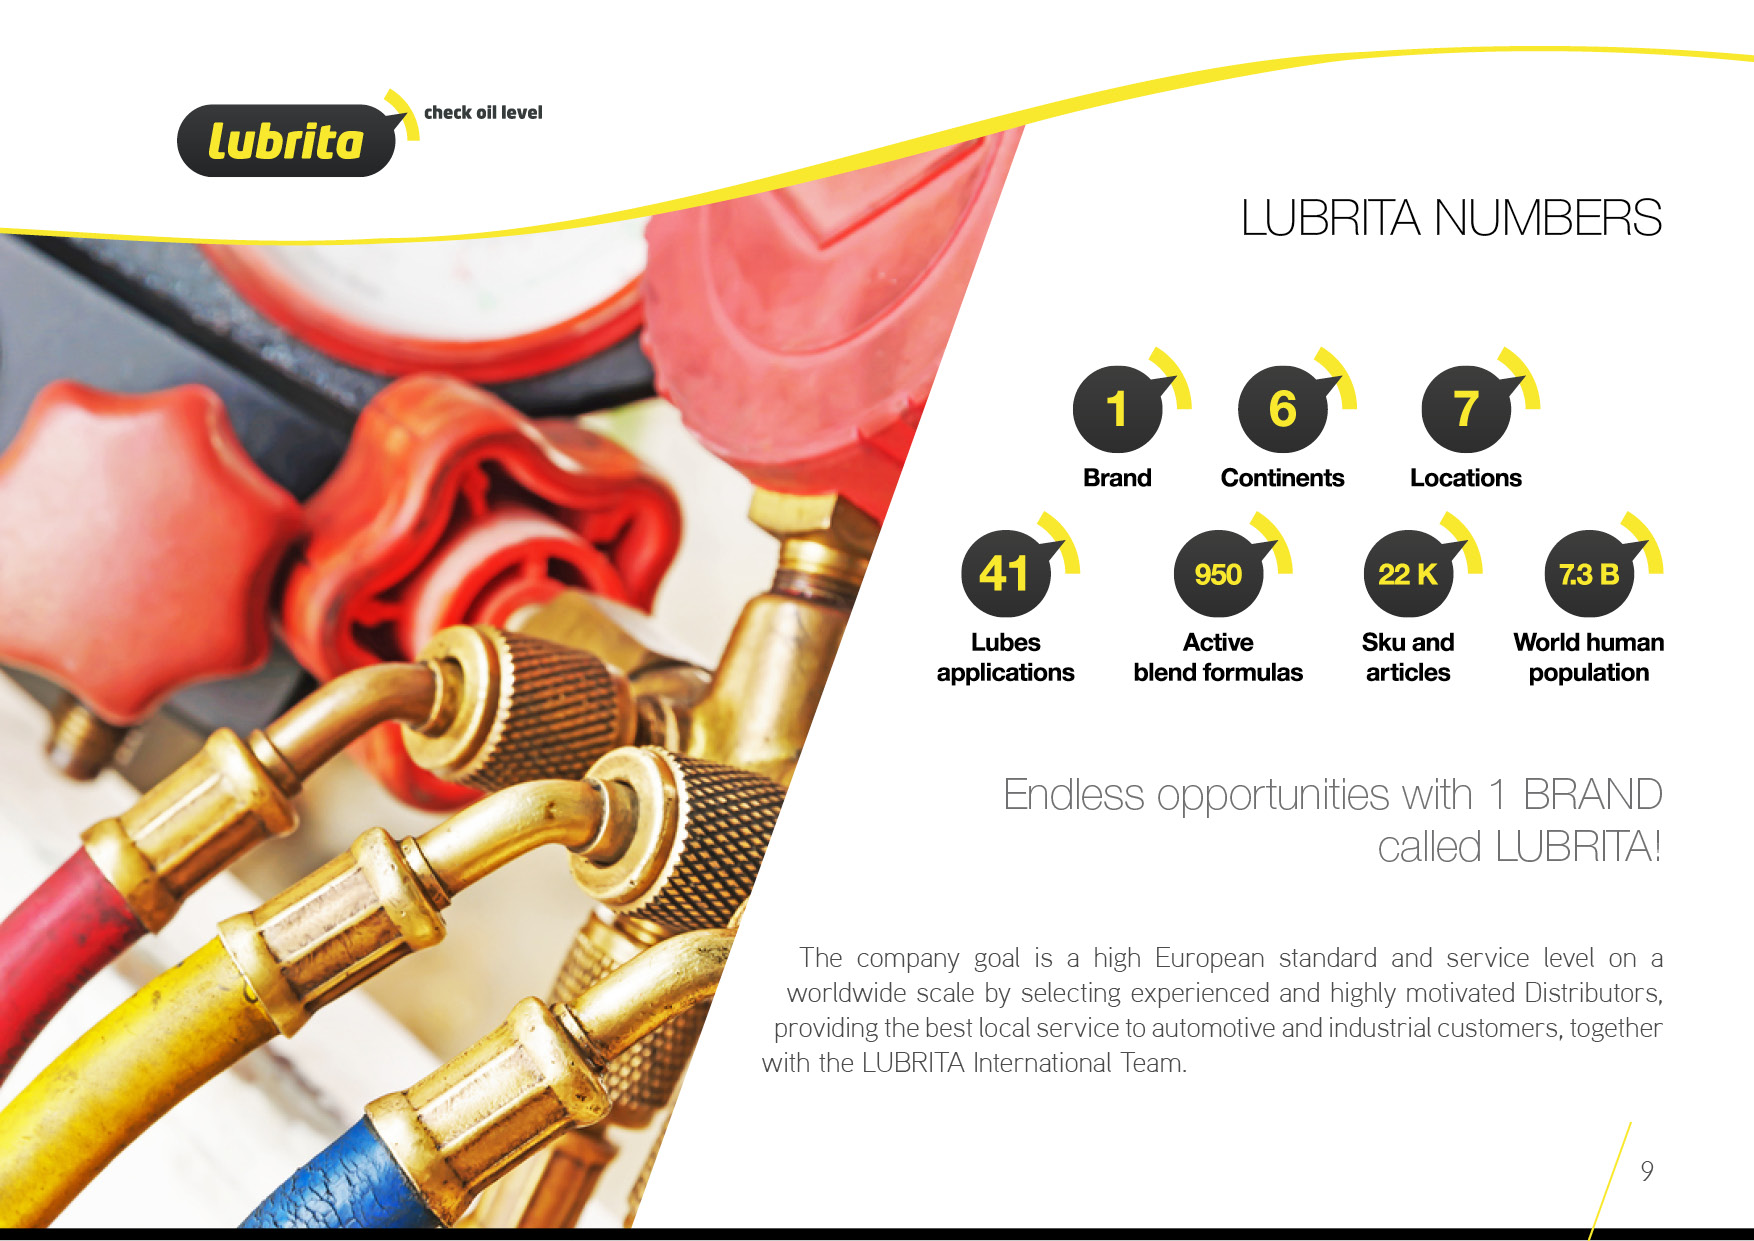 Lubrita Europe BV in lubricants and numbers.jpg